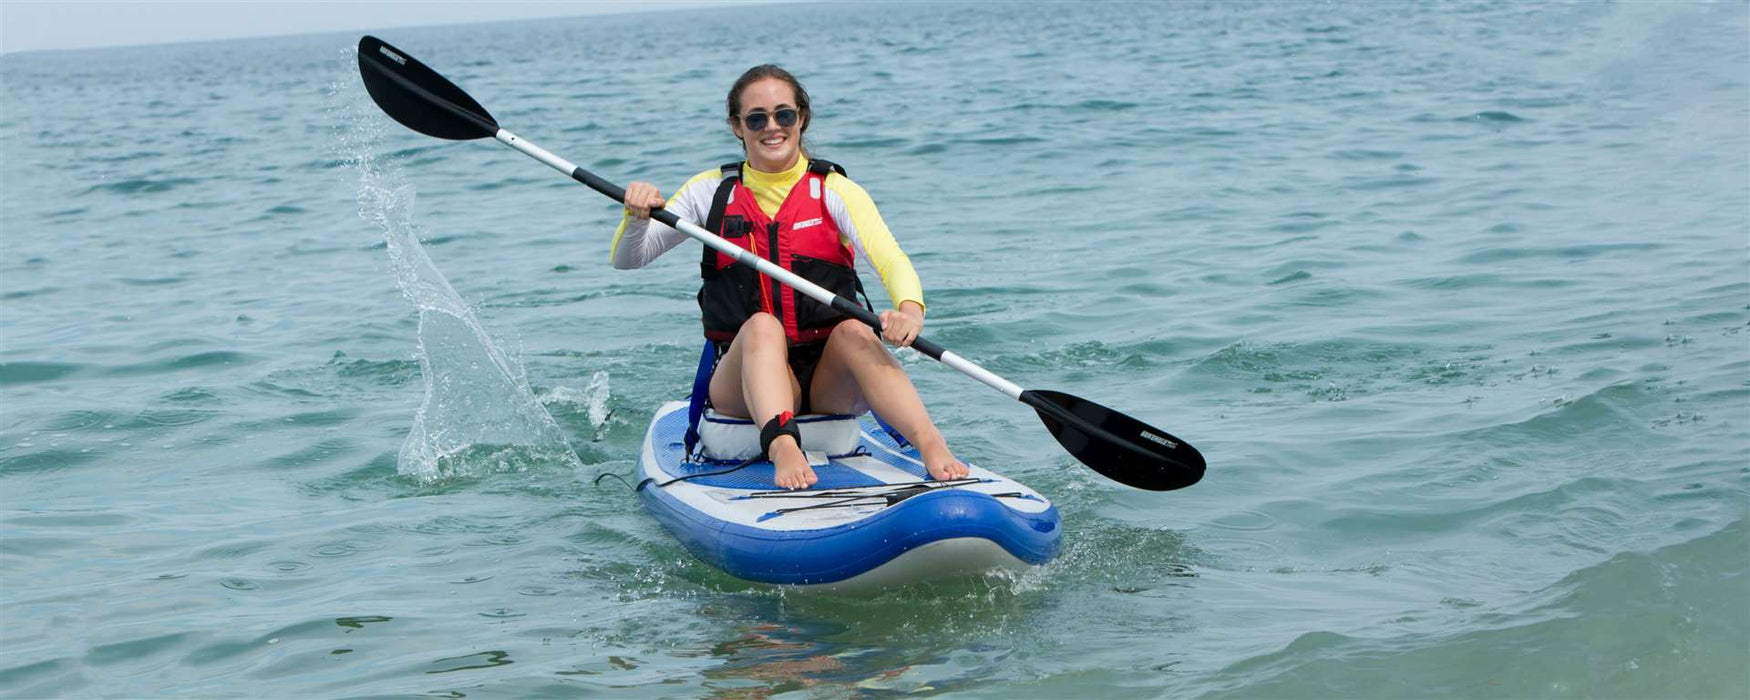 Sea Eagle LongBoard 11 Inflatable Paddleboard